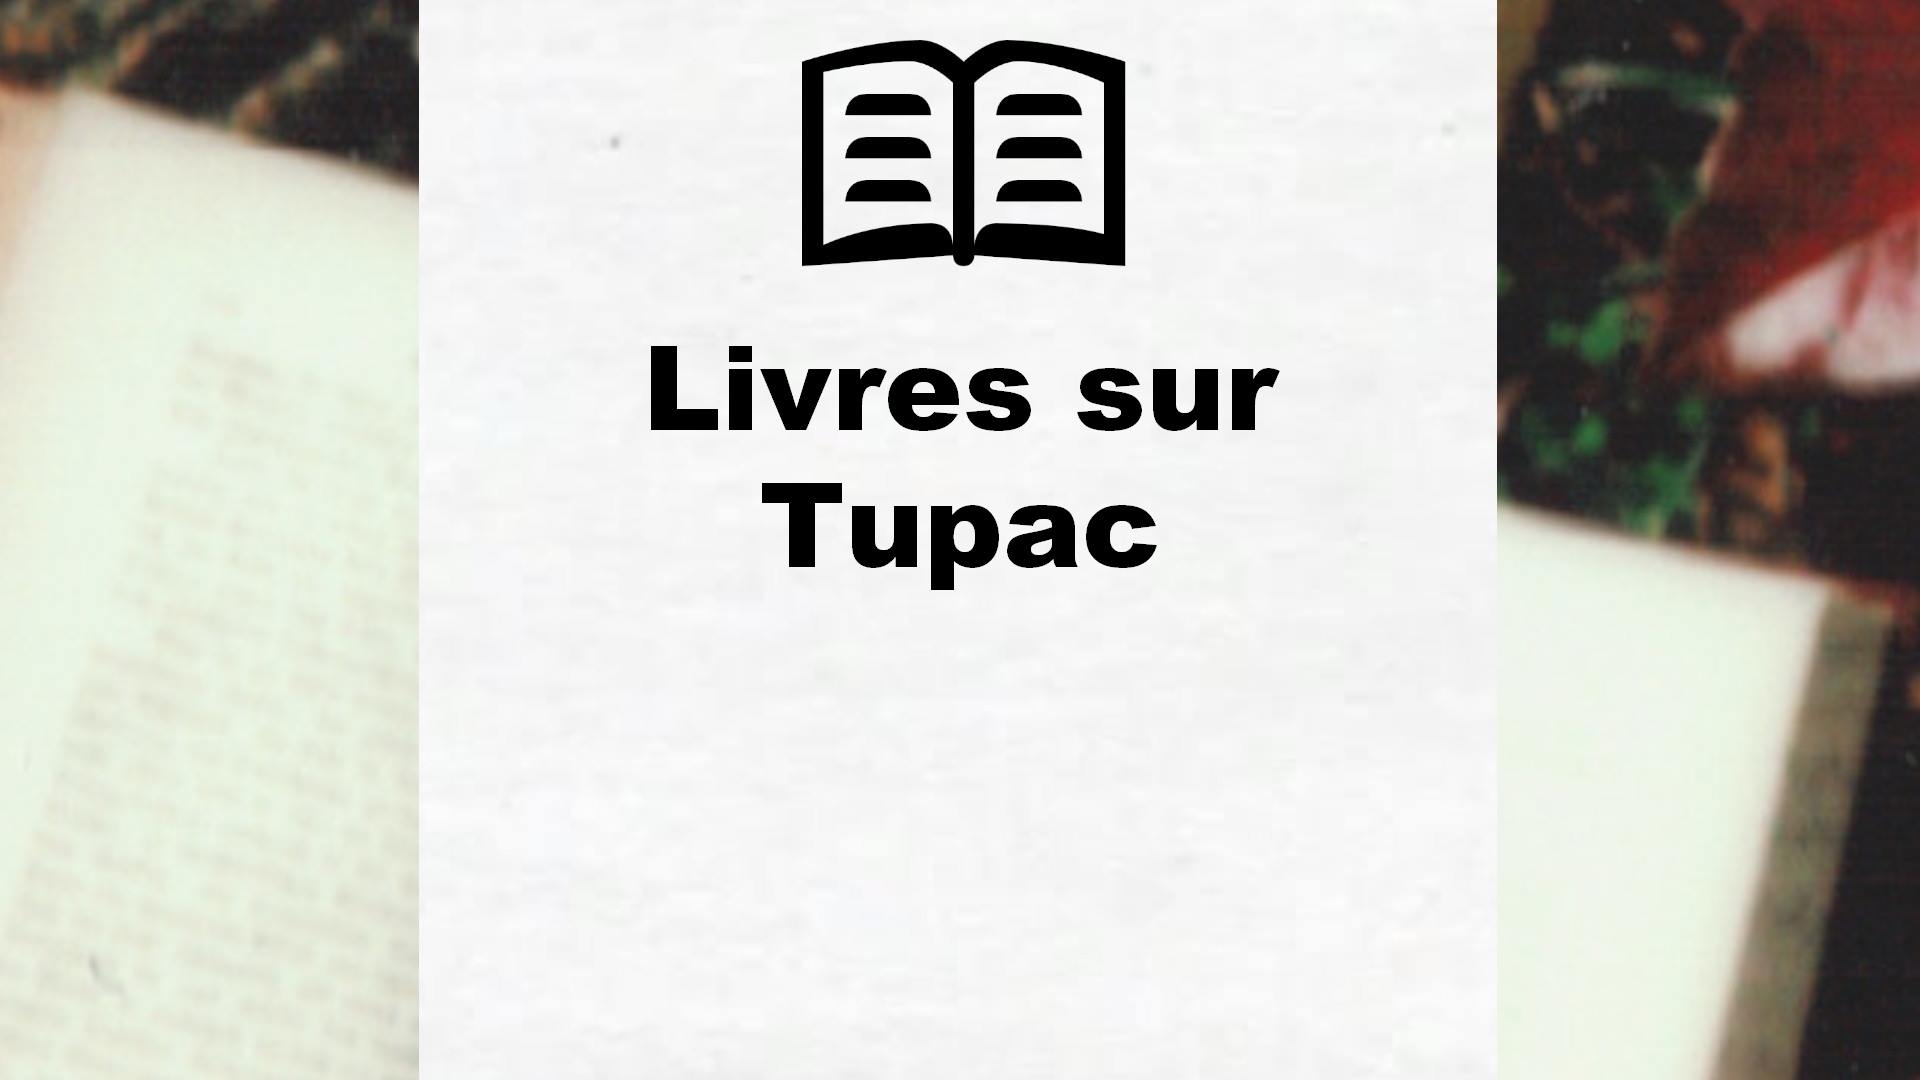 Livres sur Tupac